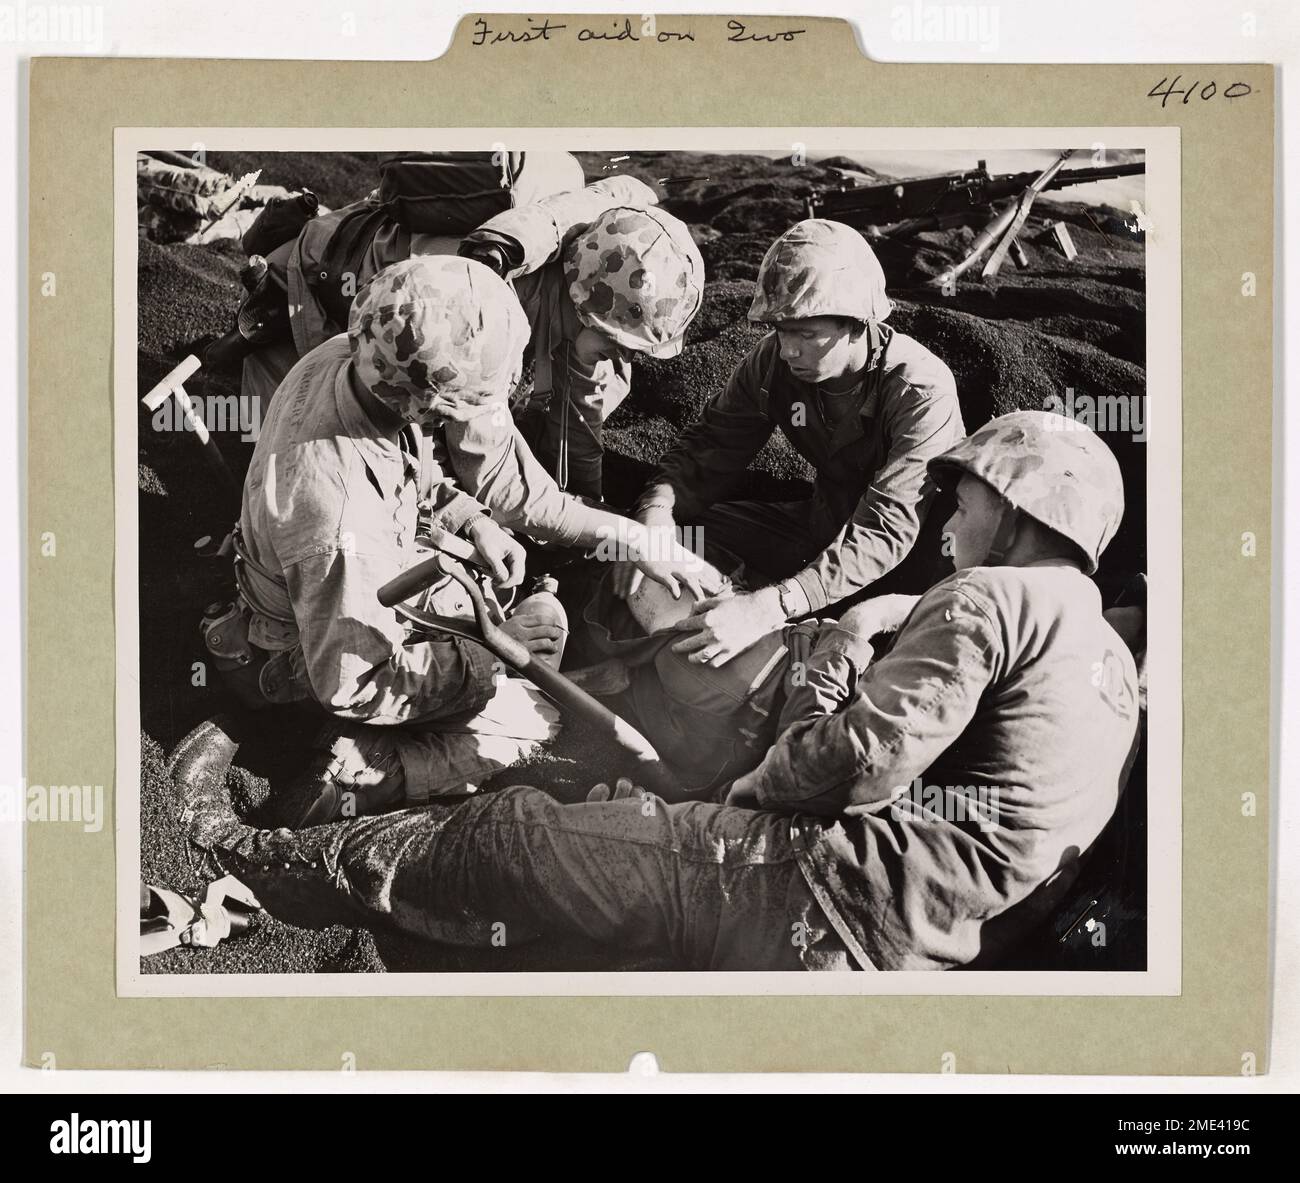 Erste Hilfe Auf Iwo Jima. Dieses Bild zeigt einen verwundeten Marine, der von Sanitätern im „Kaffeesand“ auf Iwo Jima kurz nach der ersten Welle an Land behandelt wird. Stockfoto